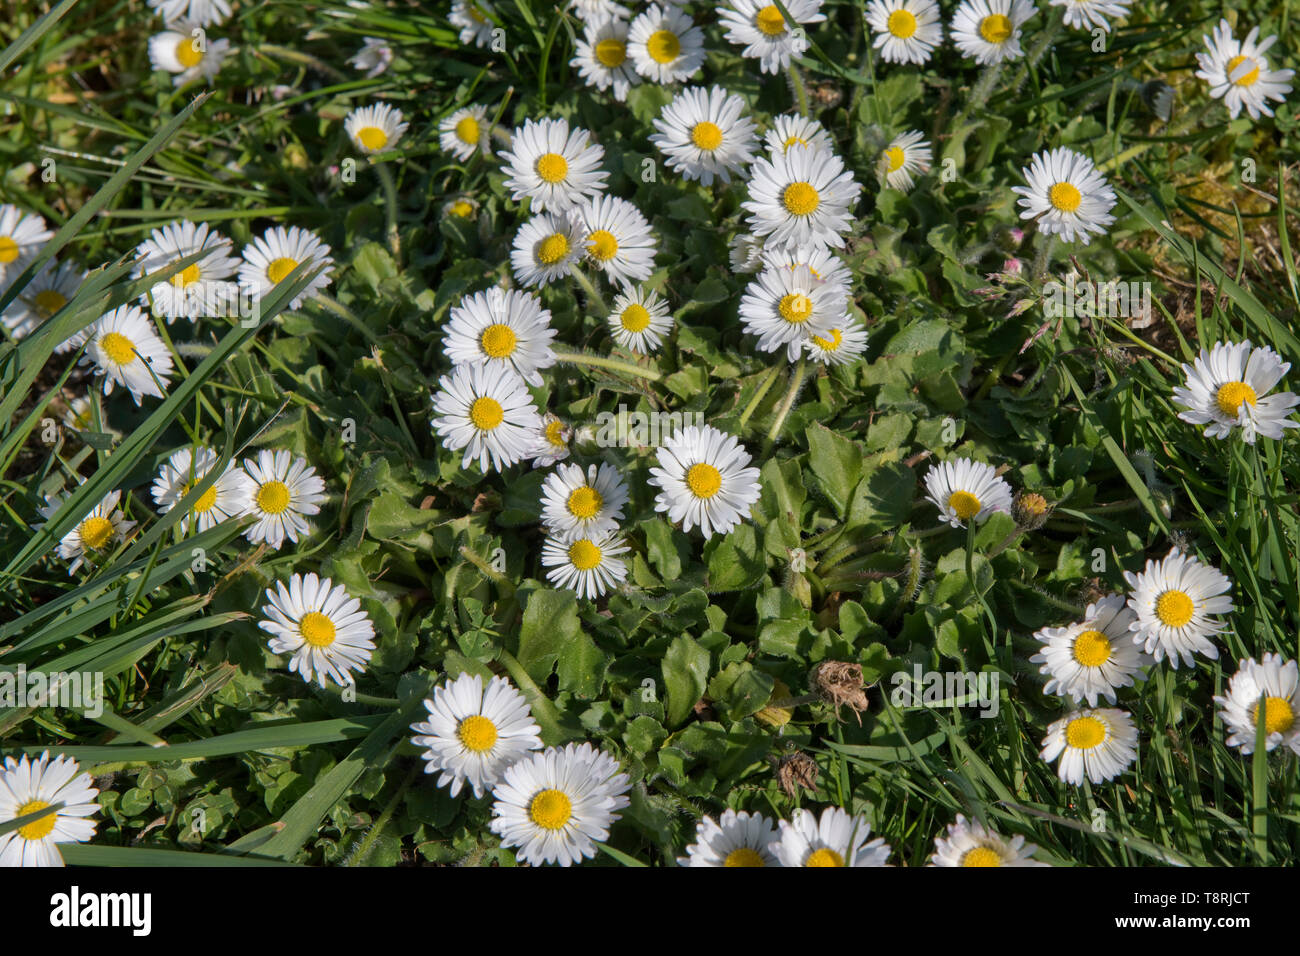 Blühende Gänseblümchen (Bellis perennis) in einem Garten Rasen, weiße daisy Blüten mit weißen und gelben Diskette Röschen, April Stockfoto